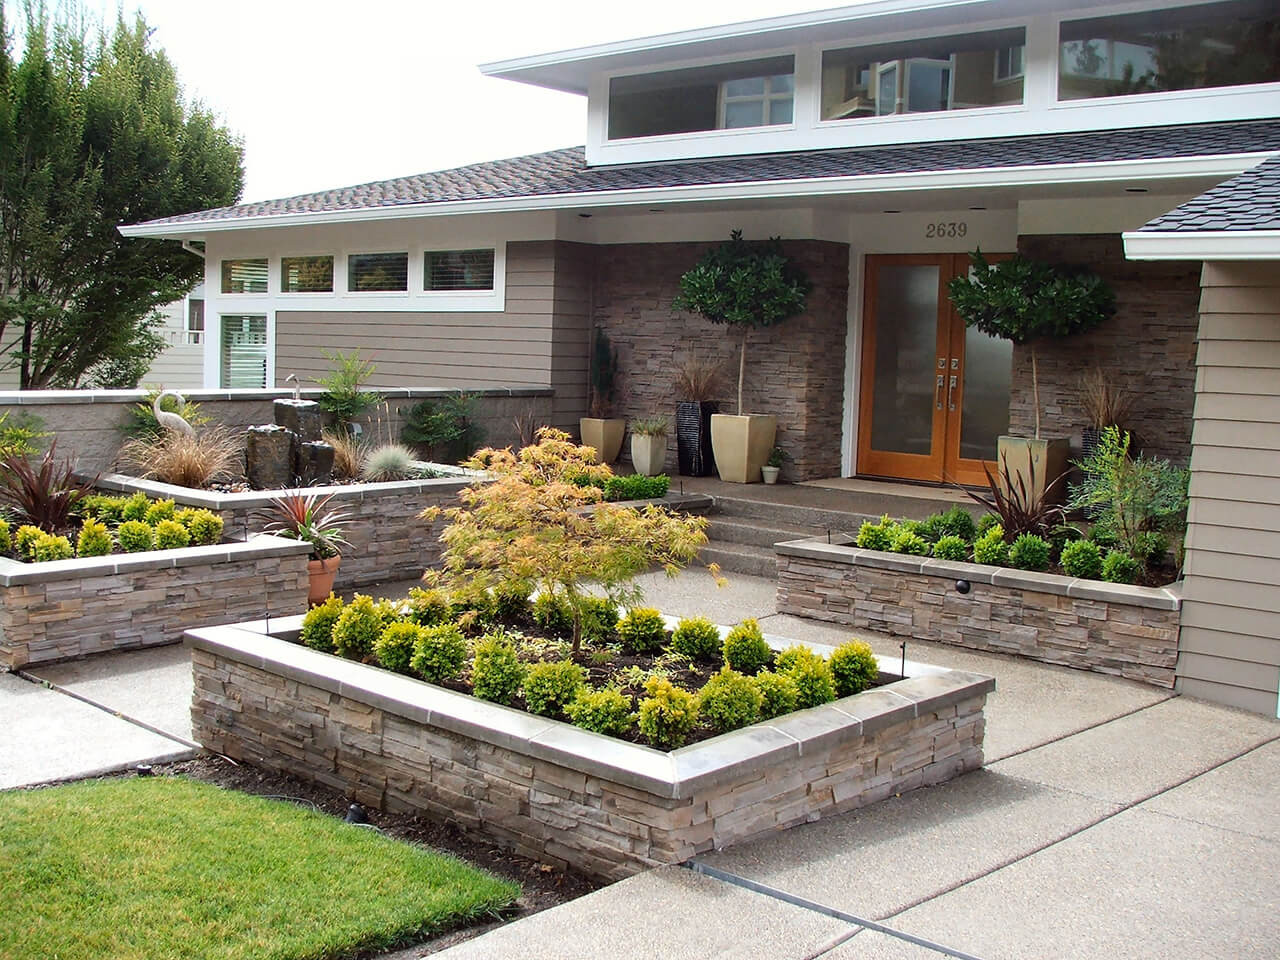 Best ideas about Landscape Ideas Front Yard
. Save or Pin 50 Best Front Yard Landscaping Ideas and Garden Designs Now.